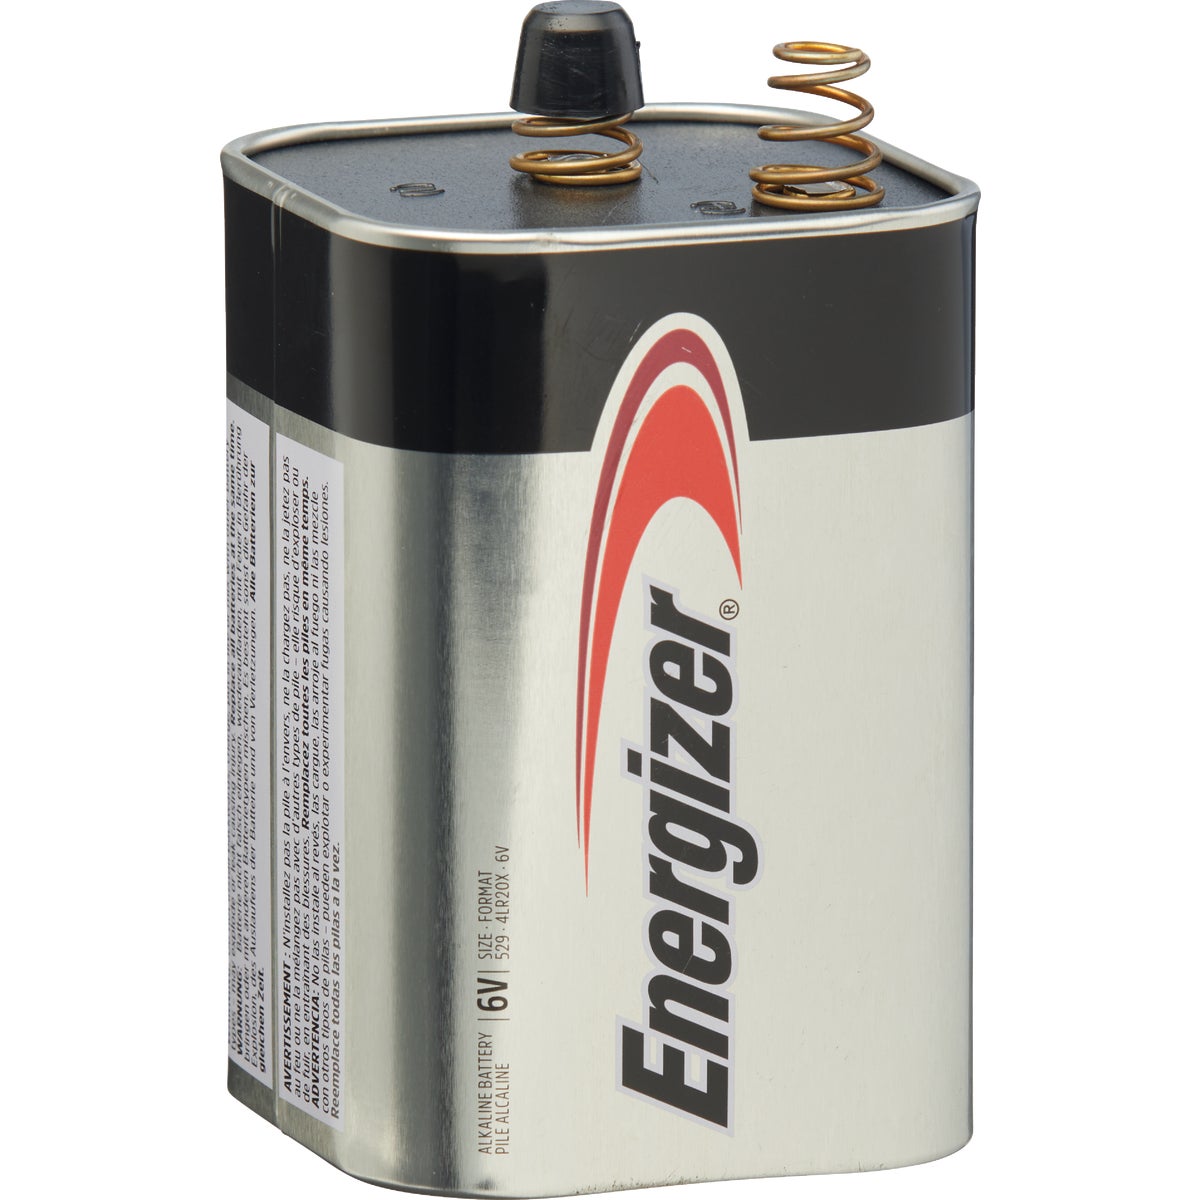 Item 812883, Energizer alkaline 6-Volt battery.